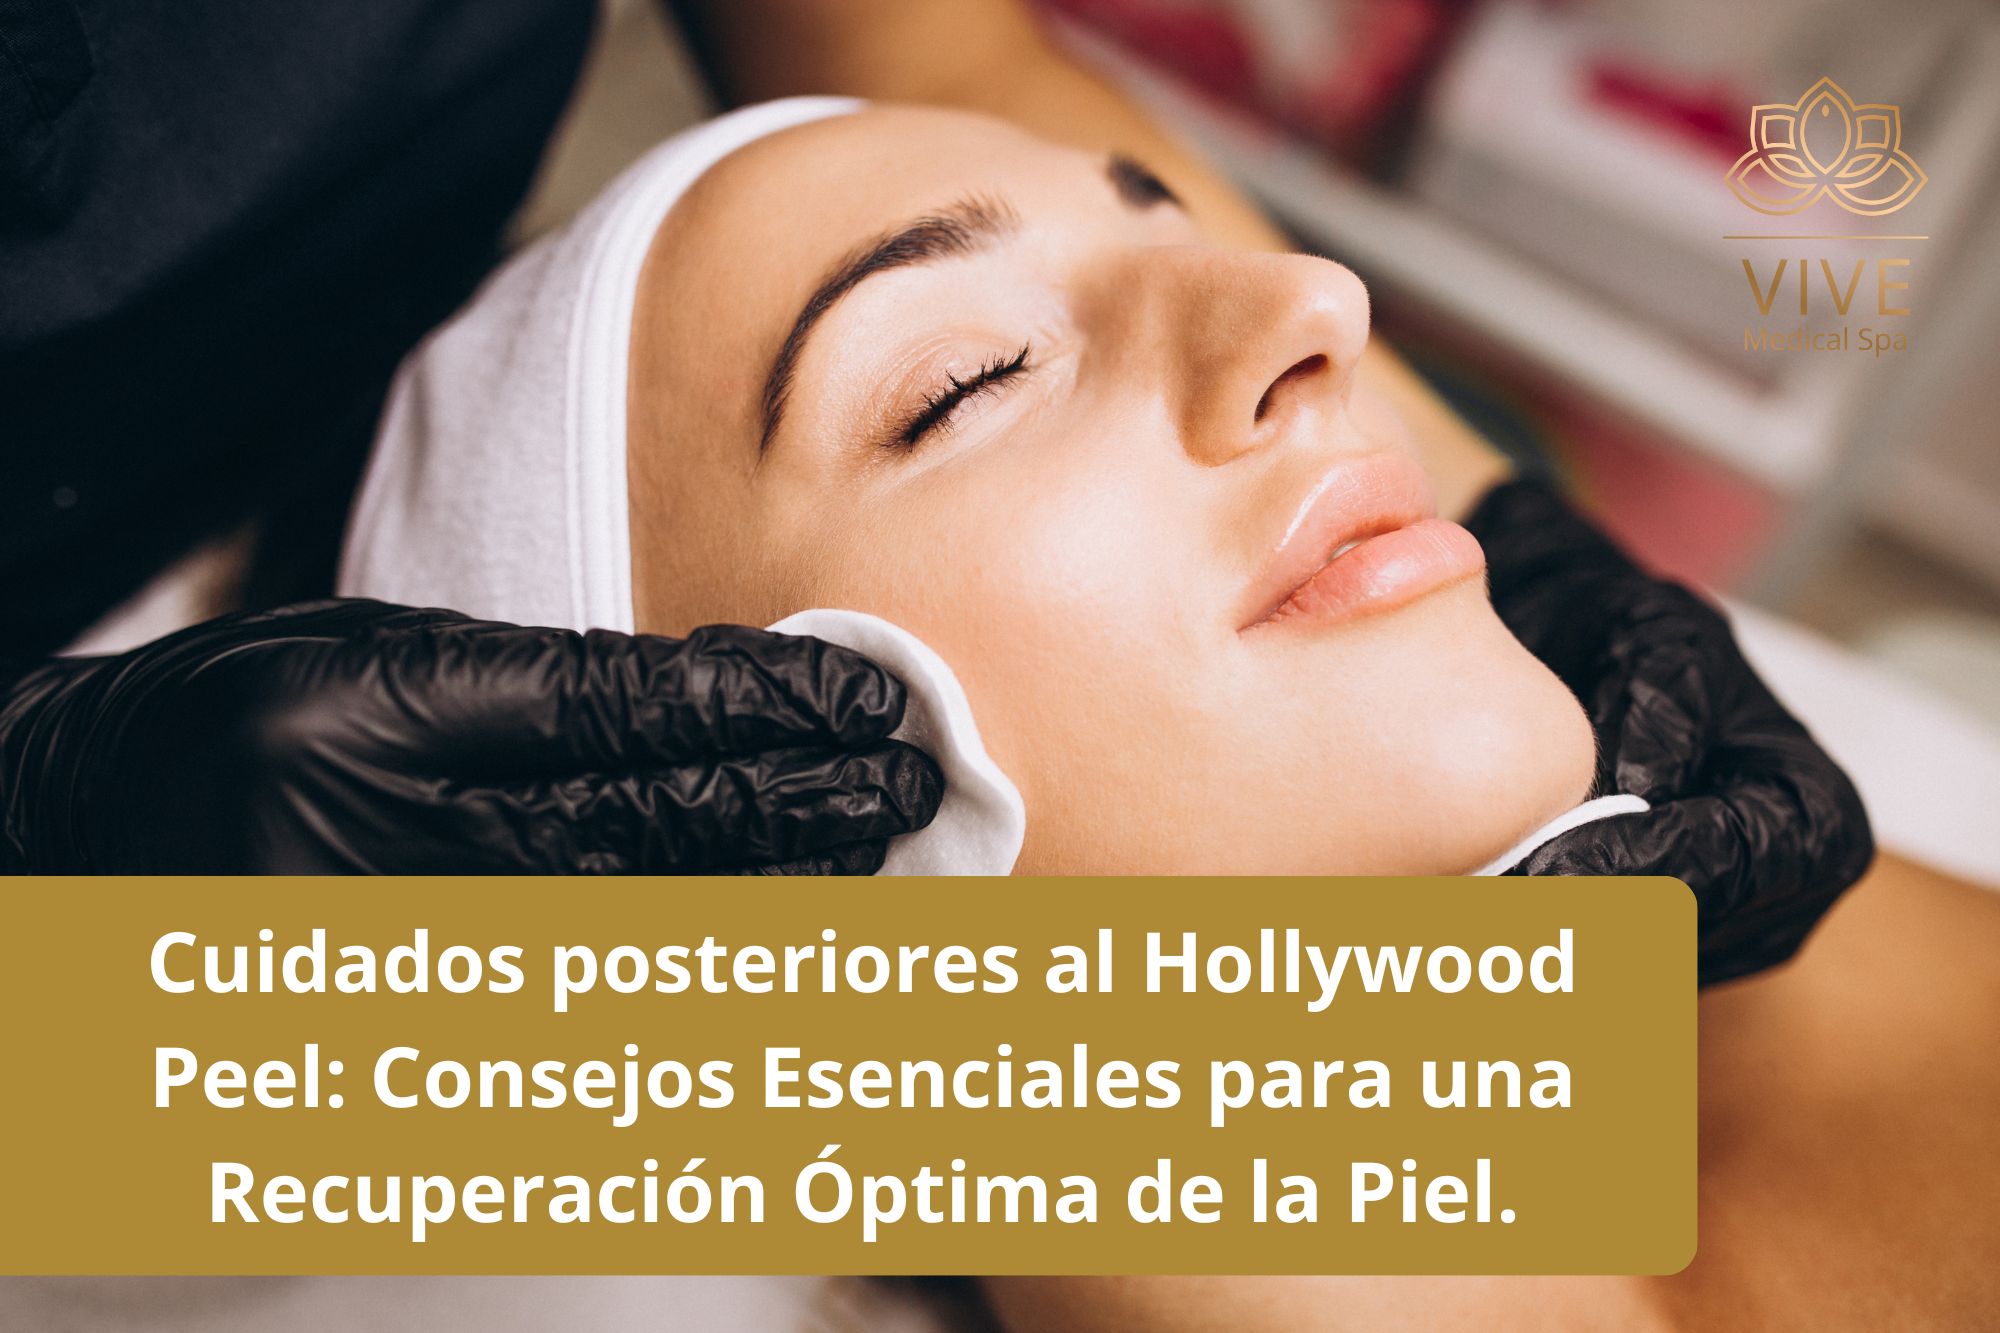 Cuidado Posterior al Hollywood Peel: Consejos Esenciales para una Óptima Recuperación de la Piel